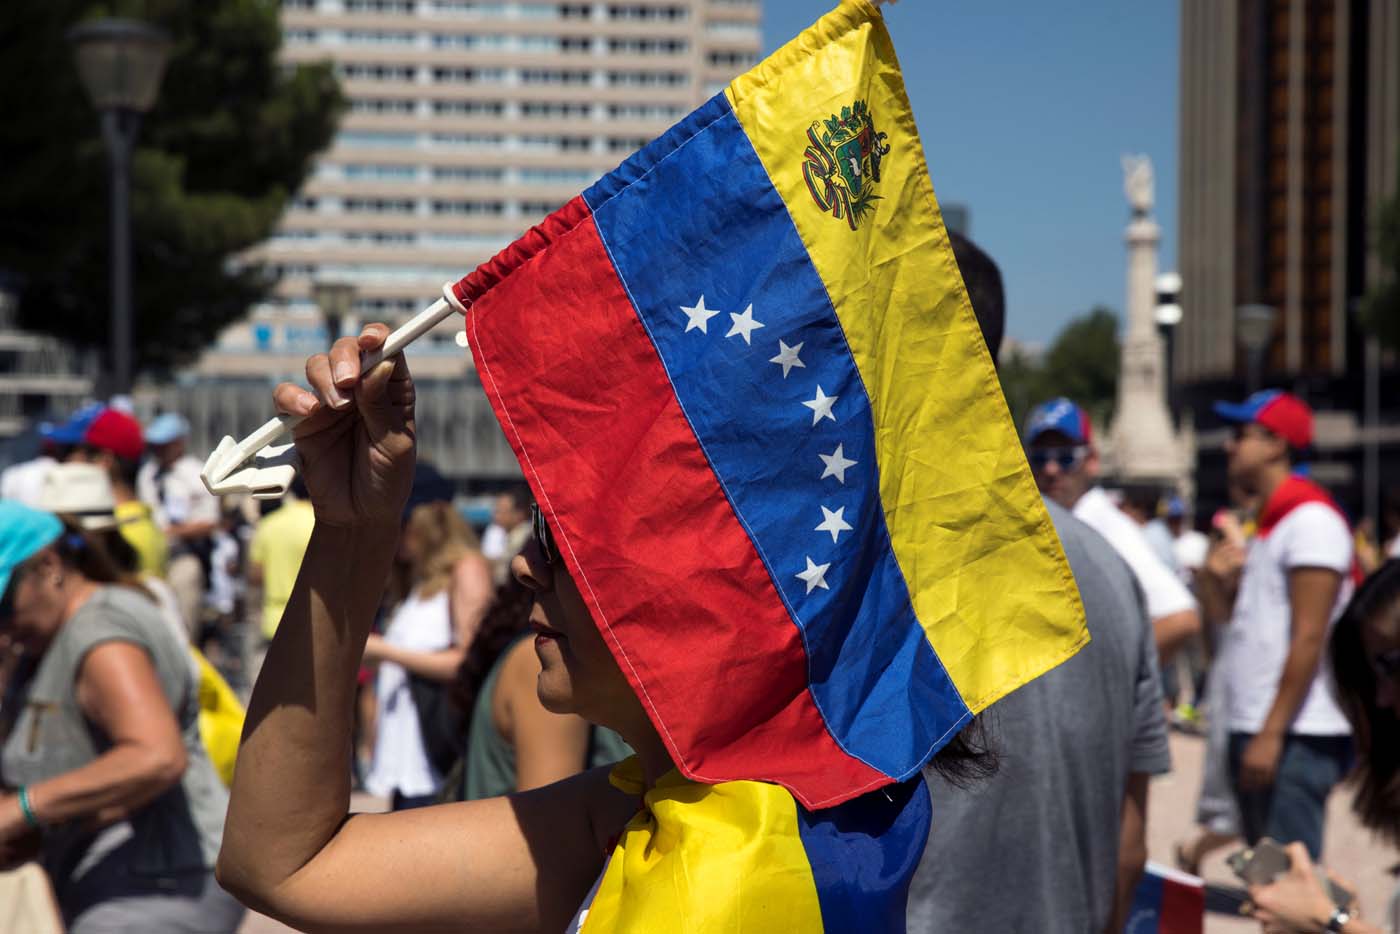 #Ven_Actívate anuncia actividades para construir una nueva Venezuela desde este #30Jul